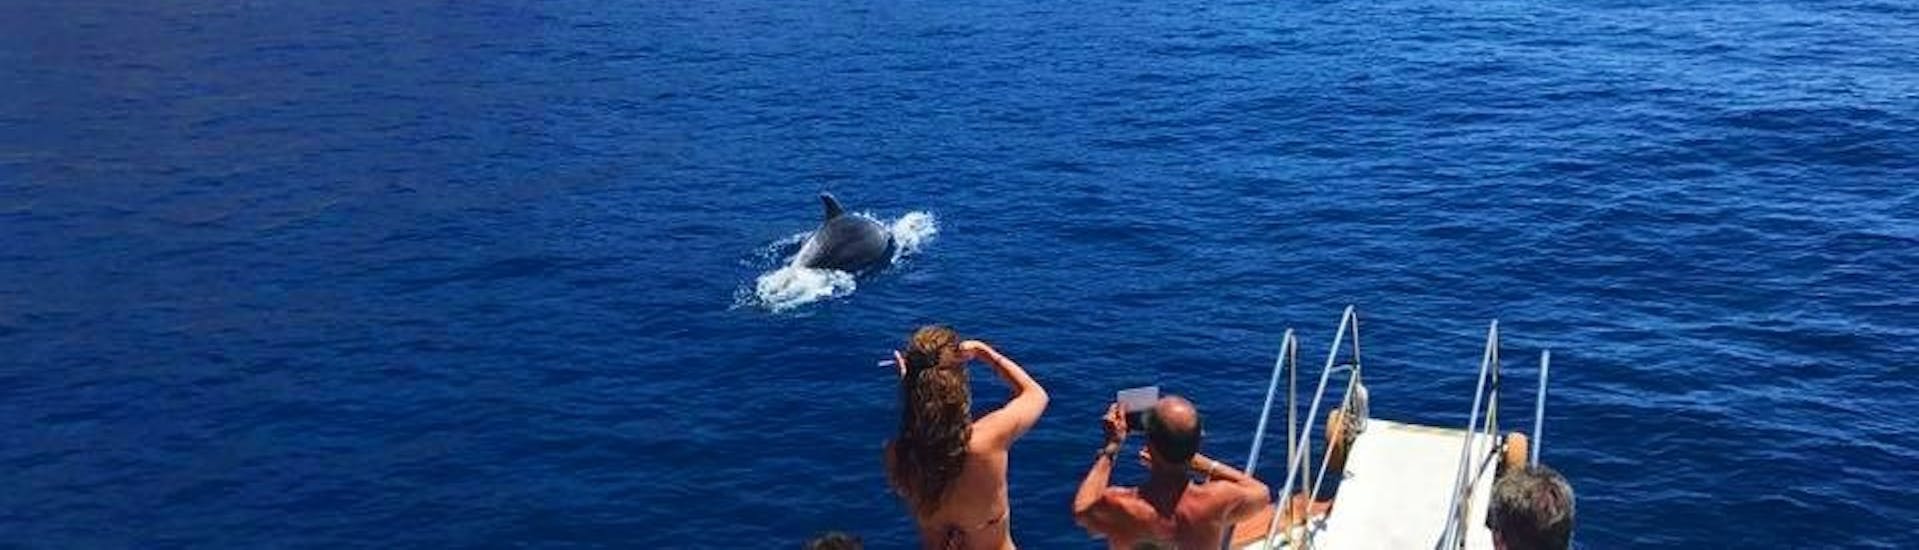 Avistamiento de delfines durante el paseo en barco desde Marina di Campo a Sant'Andrea con avistamiento de delfines con Baby Princess Elba.